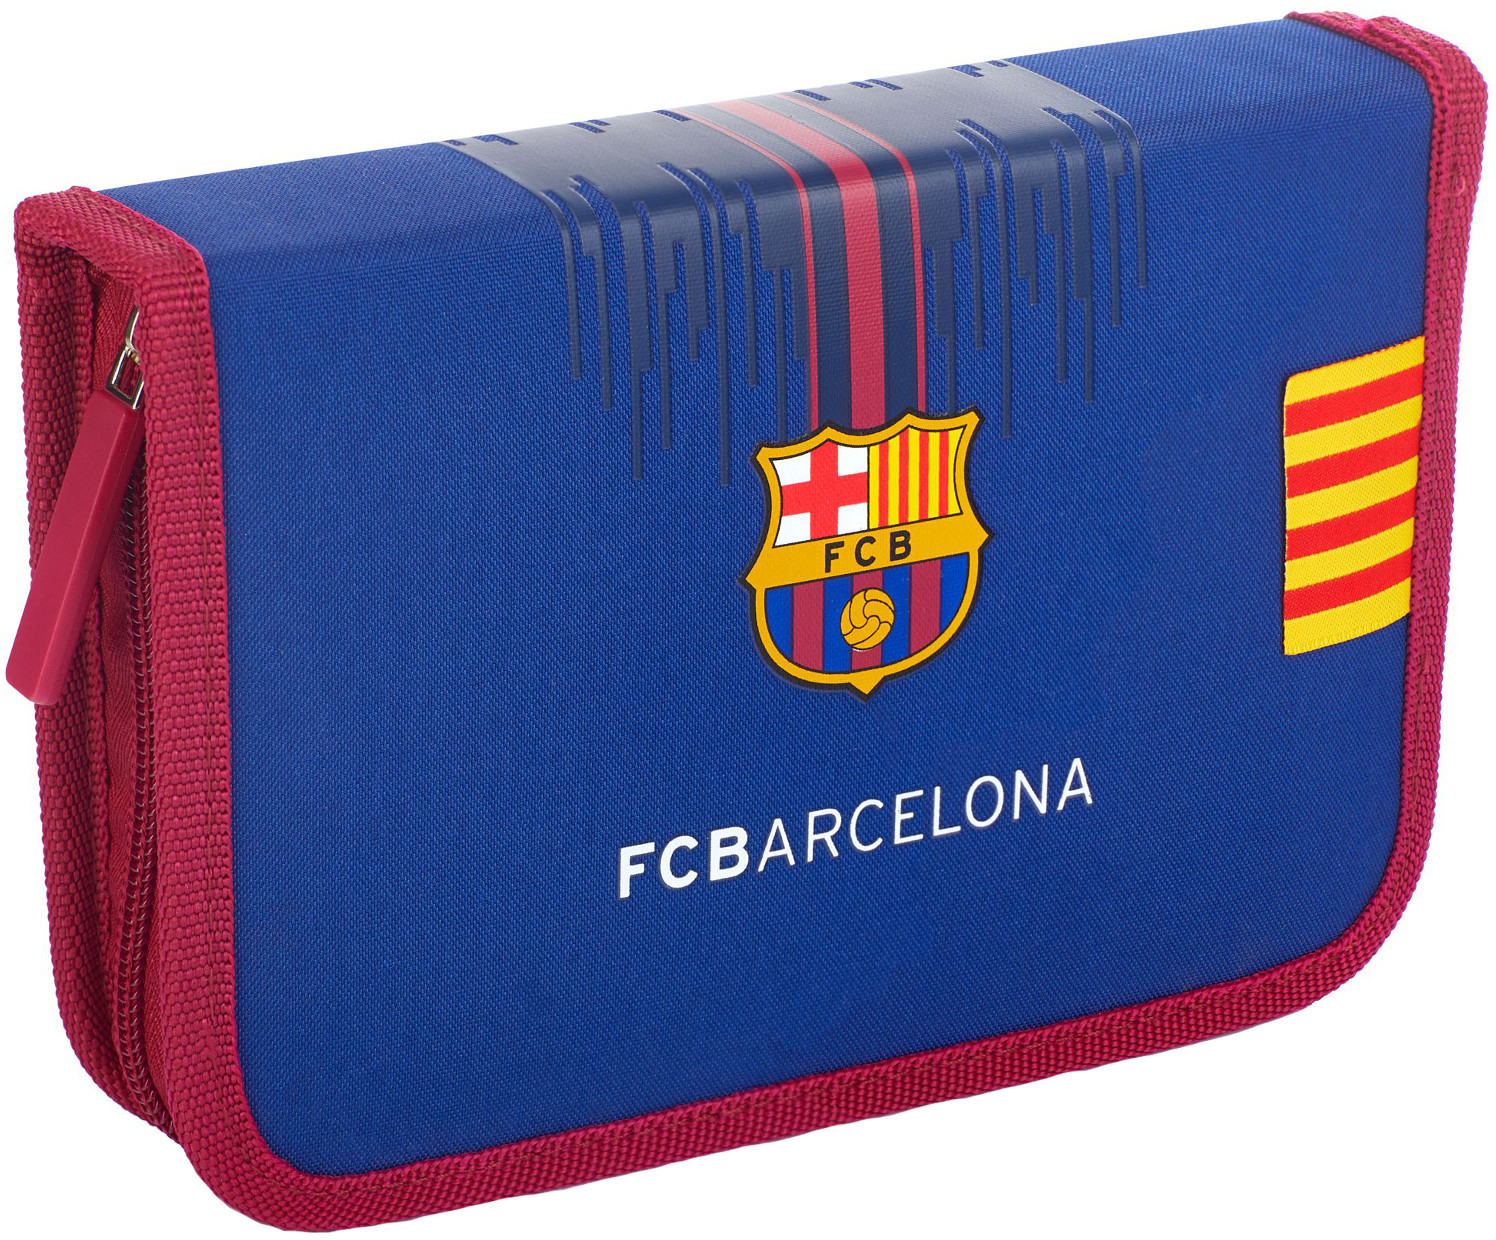 Astra Piórnik z wyposażeniem 2 klapki FC Barcelona FC-234 503019001